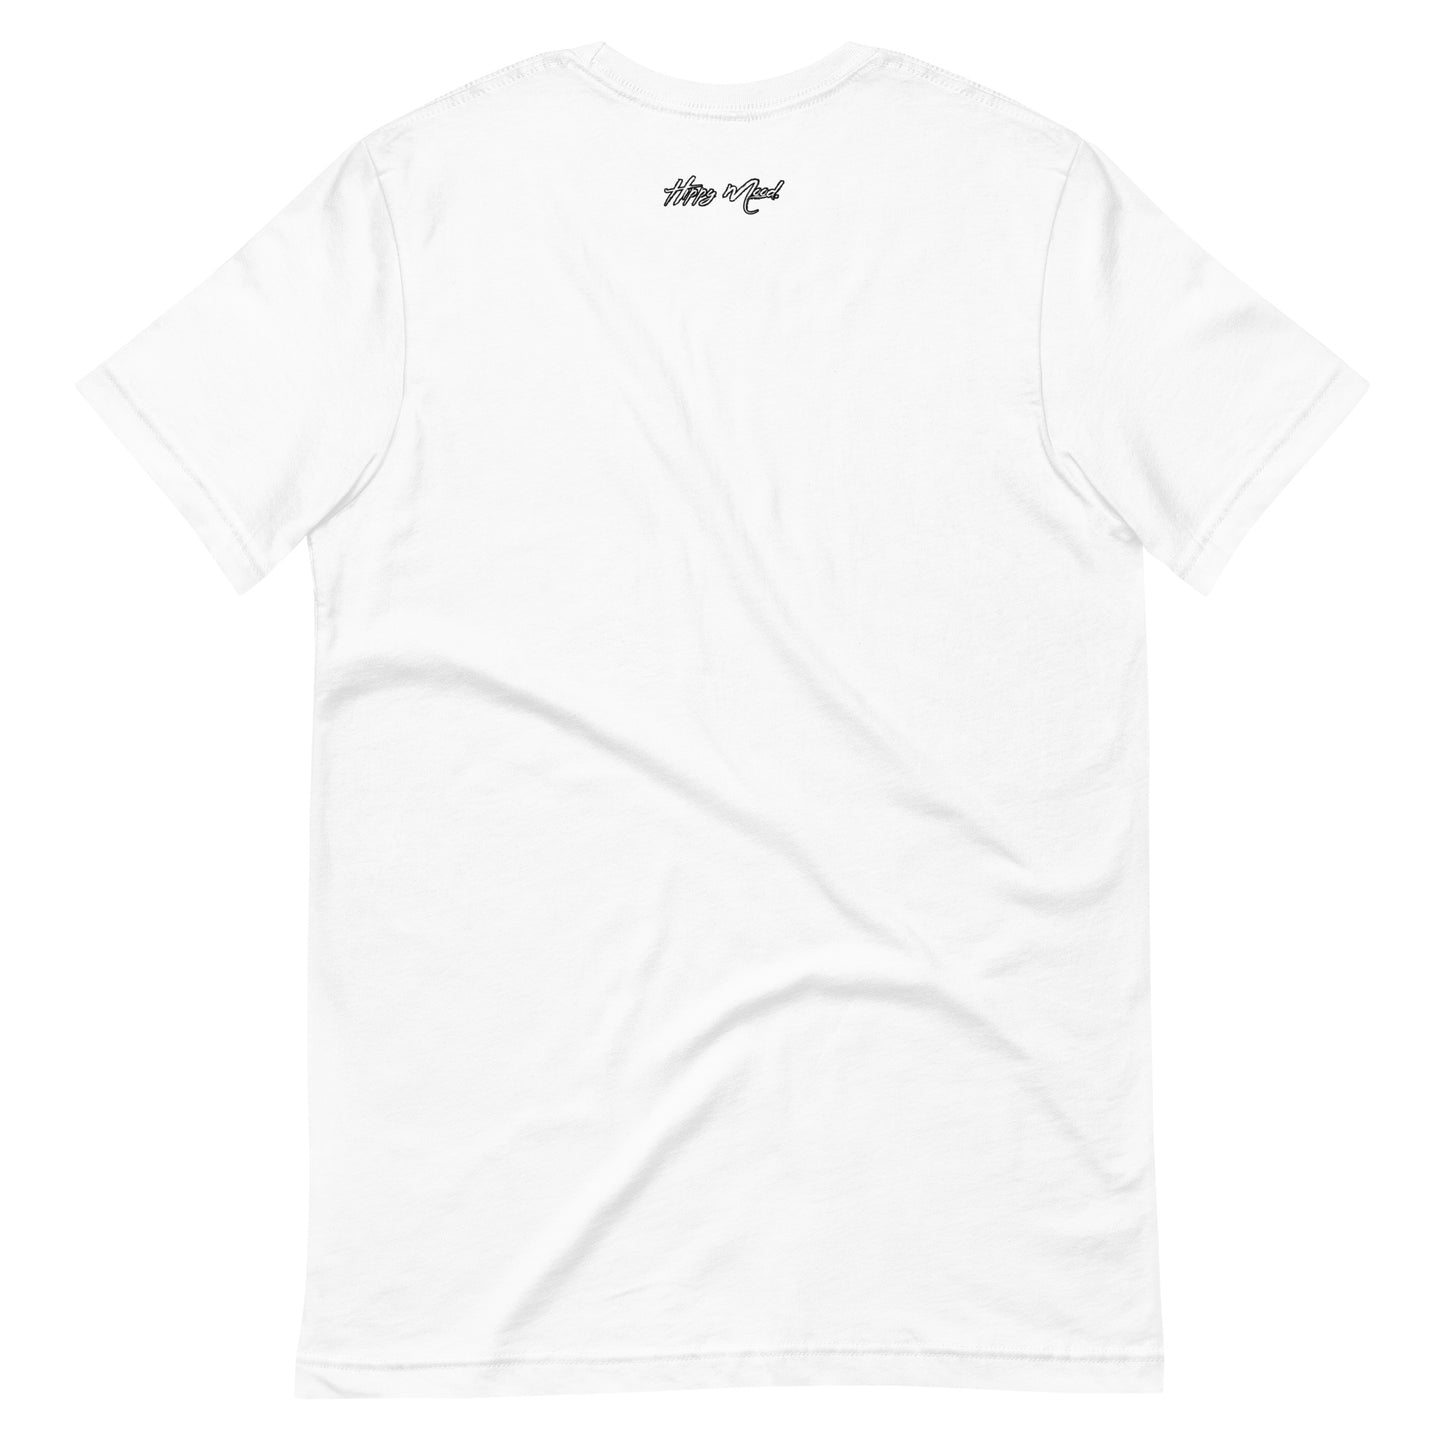 Gang Bardi | Unisex t-shirt